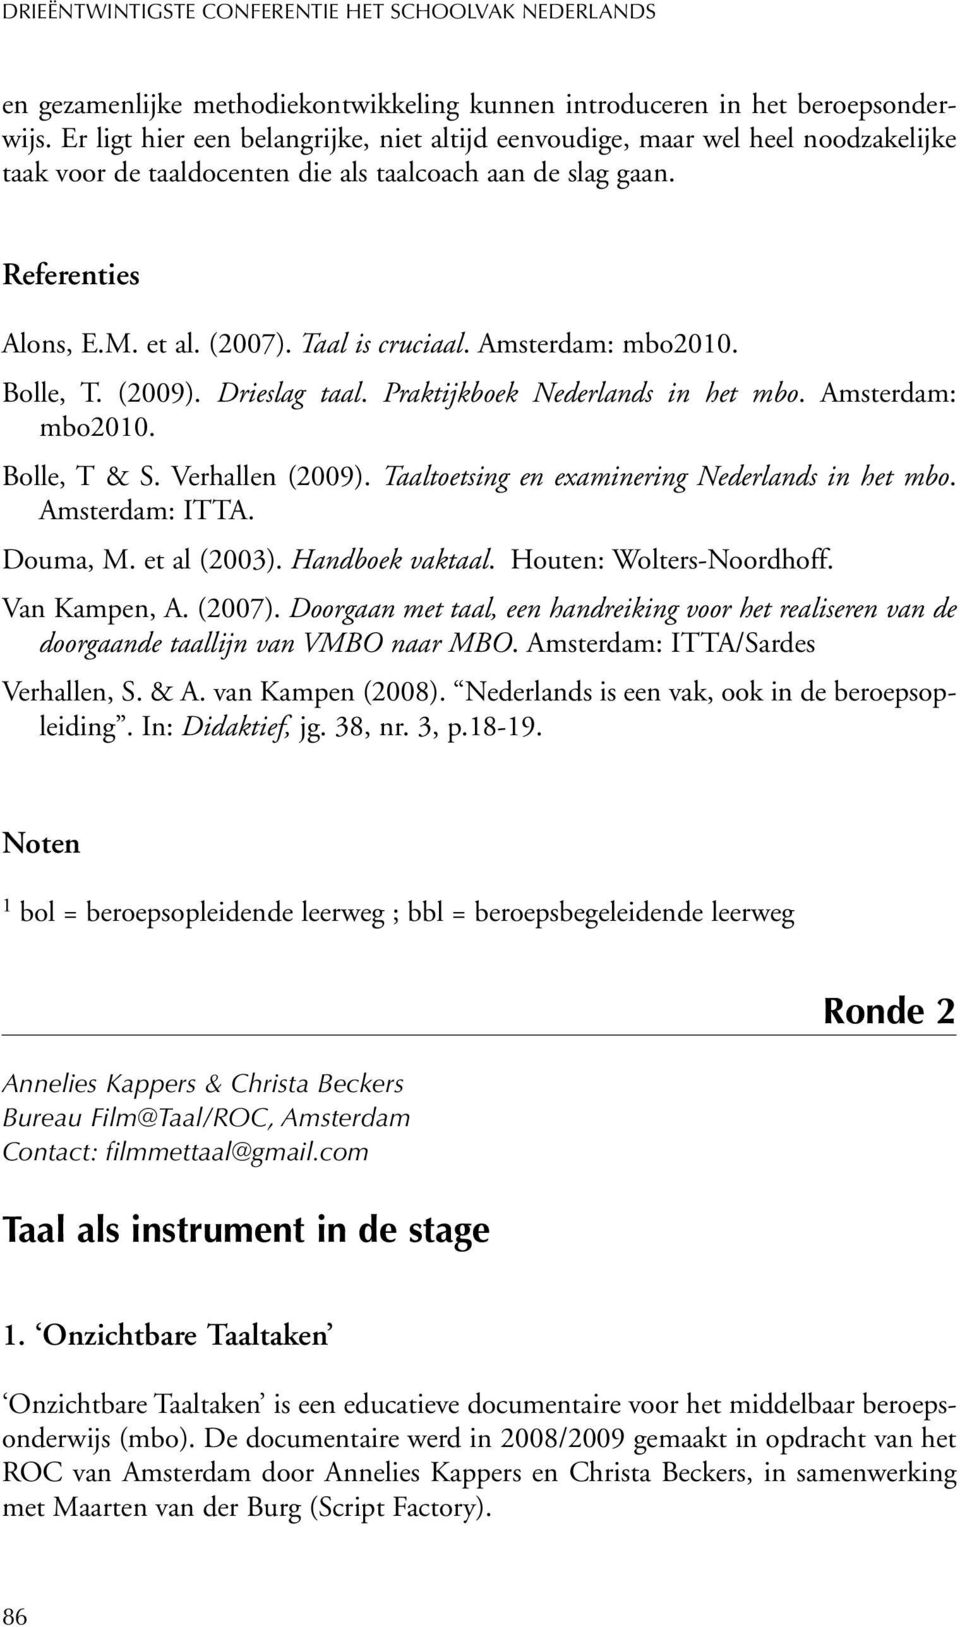 Amsterdam: mbo2010. Bolle, T. (2009). Drieslag taal. Praktijkboek Nederlands in het mbo. Amsterdam: mbo2010. Bolle, T & S. Verhallen (2009). Taaltoetsing en examinering Nederlands in het mbo.